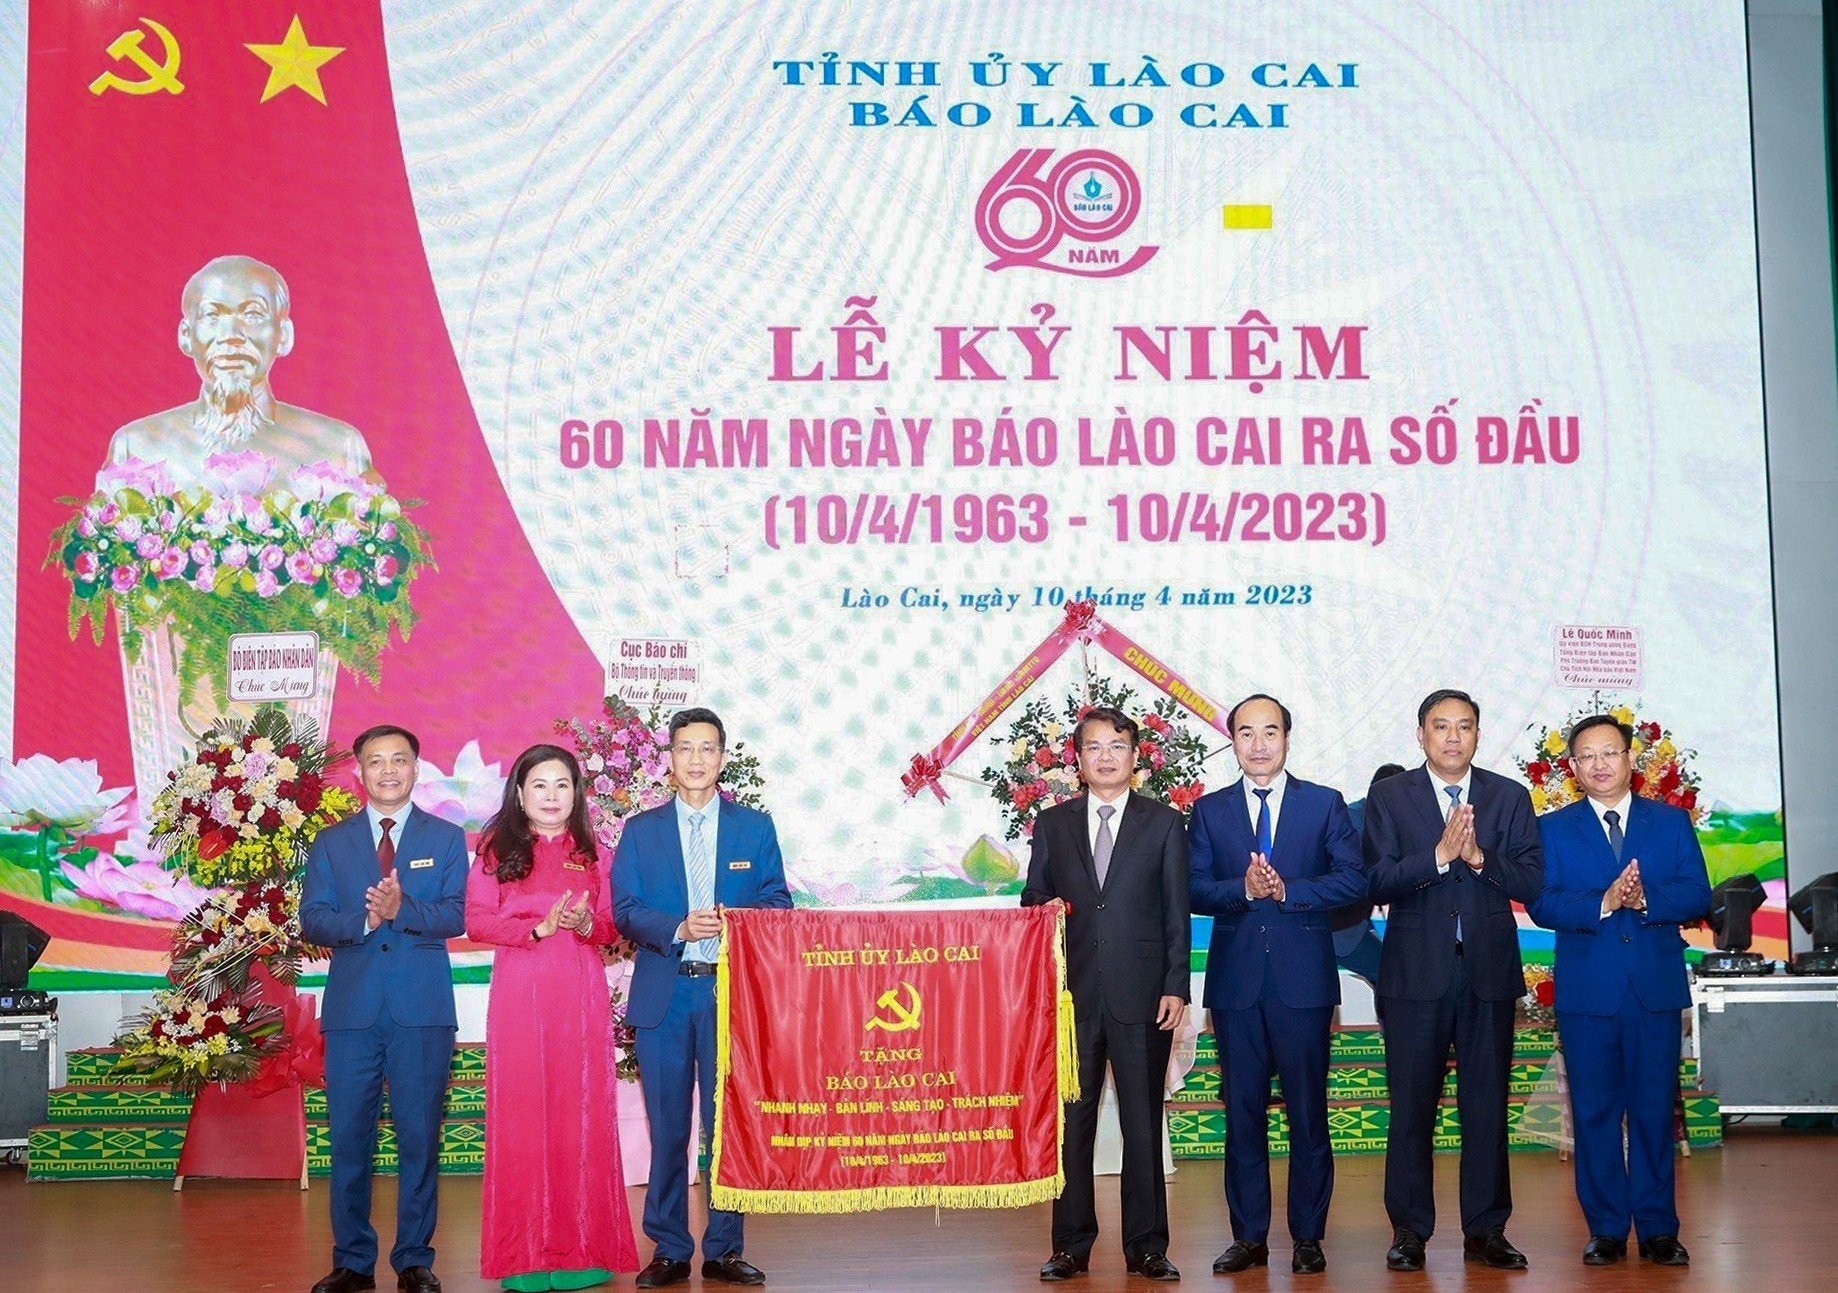 Báo Lào Cai long trọng kỷ niệm 60 năm ngày ra số đầu 